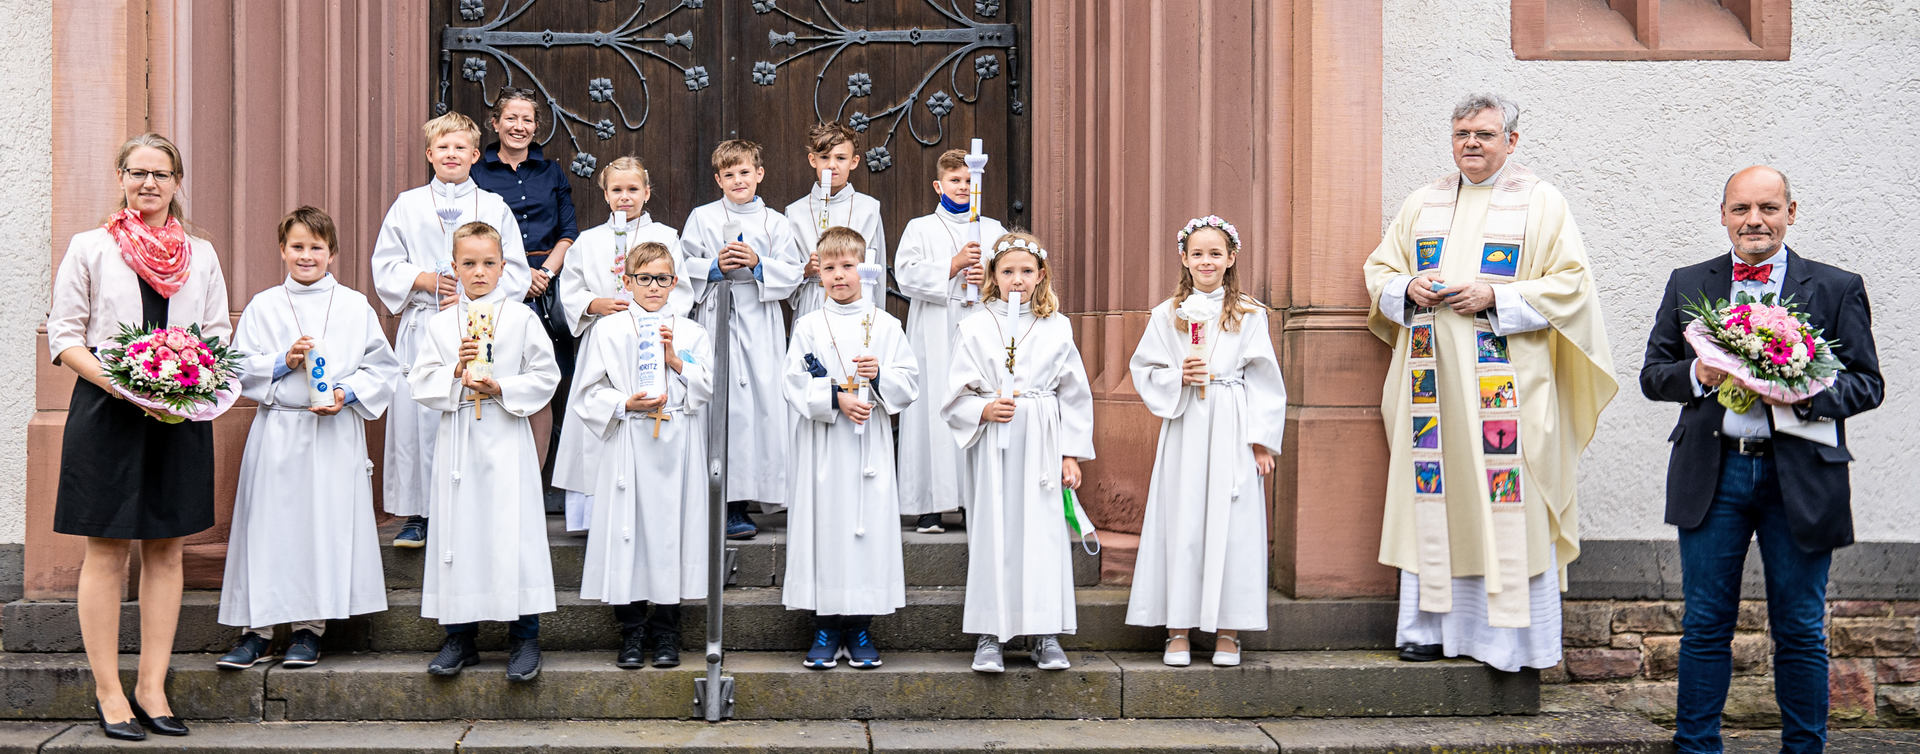 Erste Gruppe nach Empfang der Hl. Kommunion Im festlichen Gewand vor dem Kirchenportal (c) Foto Stöber 2020